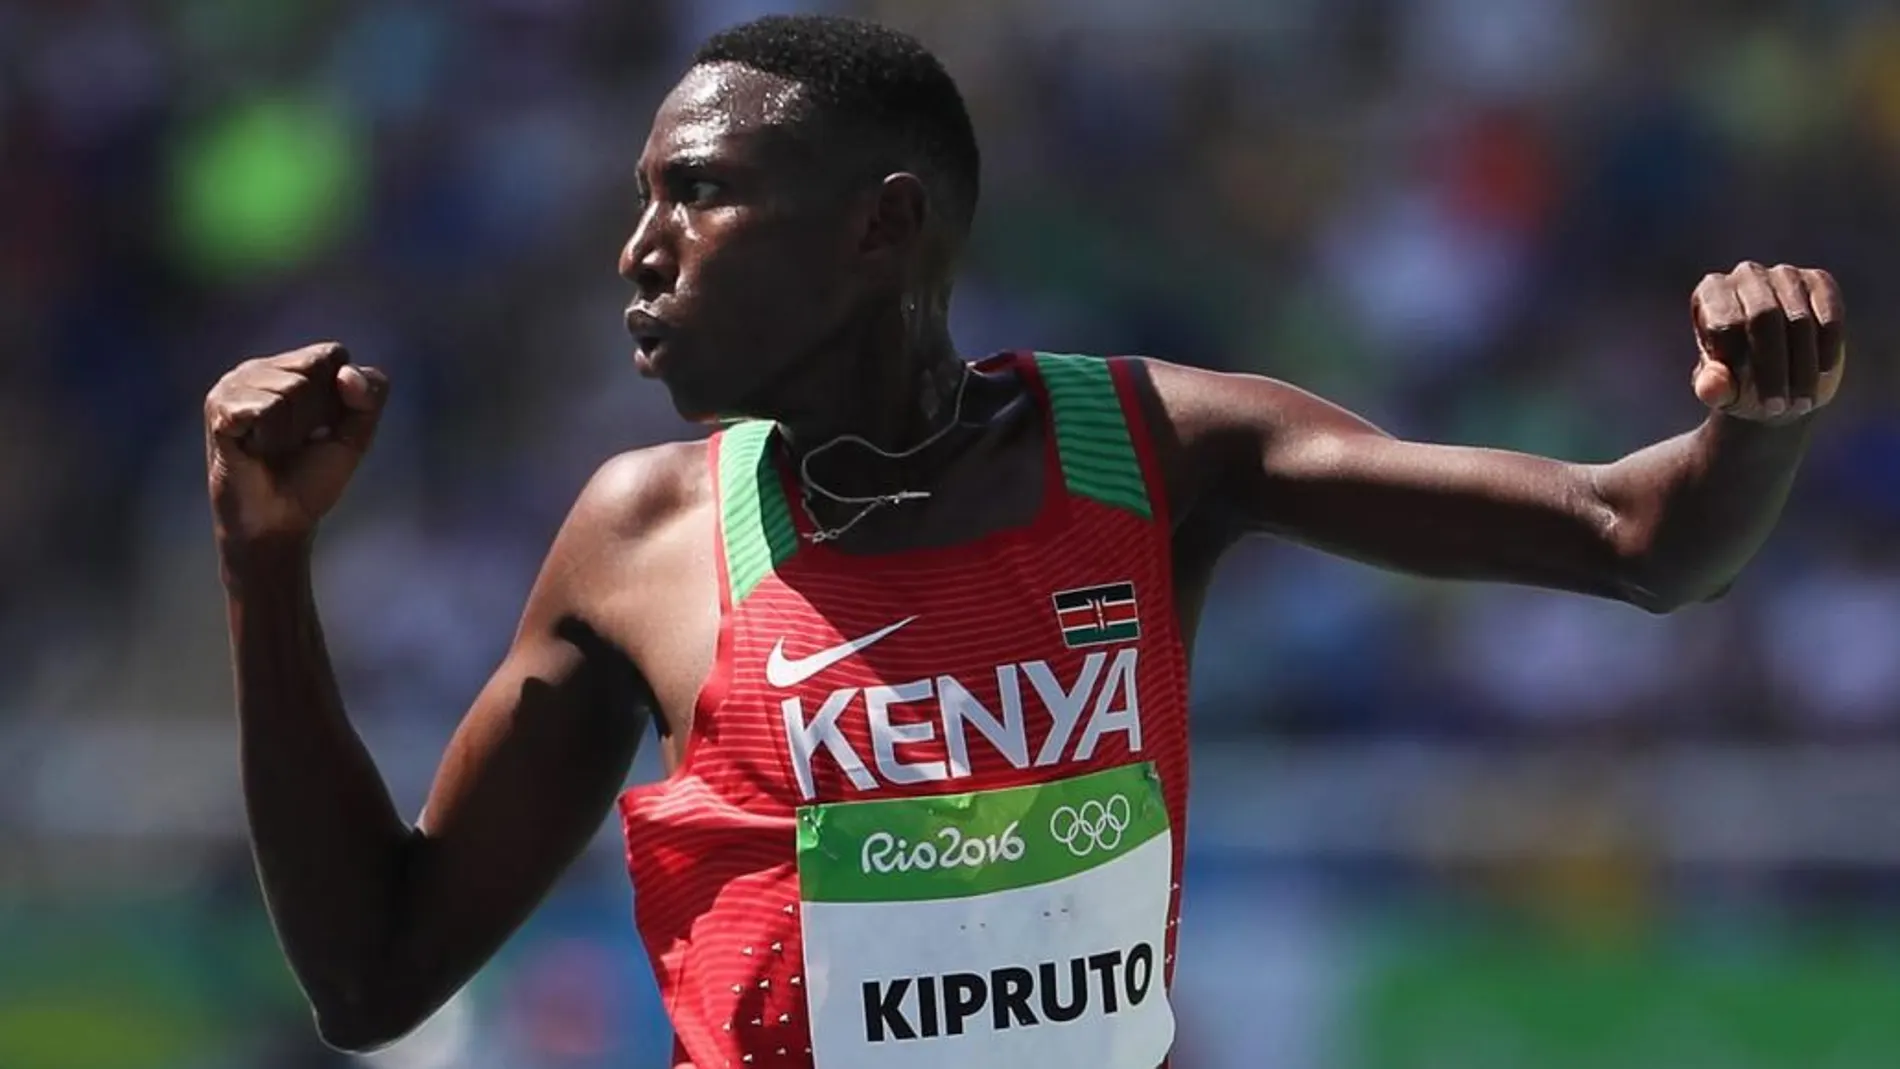 Conseslus Kipruto de Kenia celebra su victoria en la carrera de 3000m obstáculos.